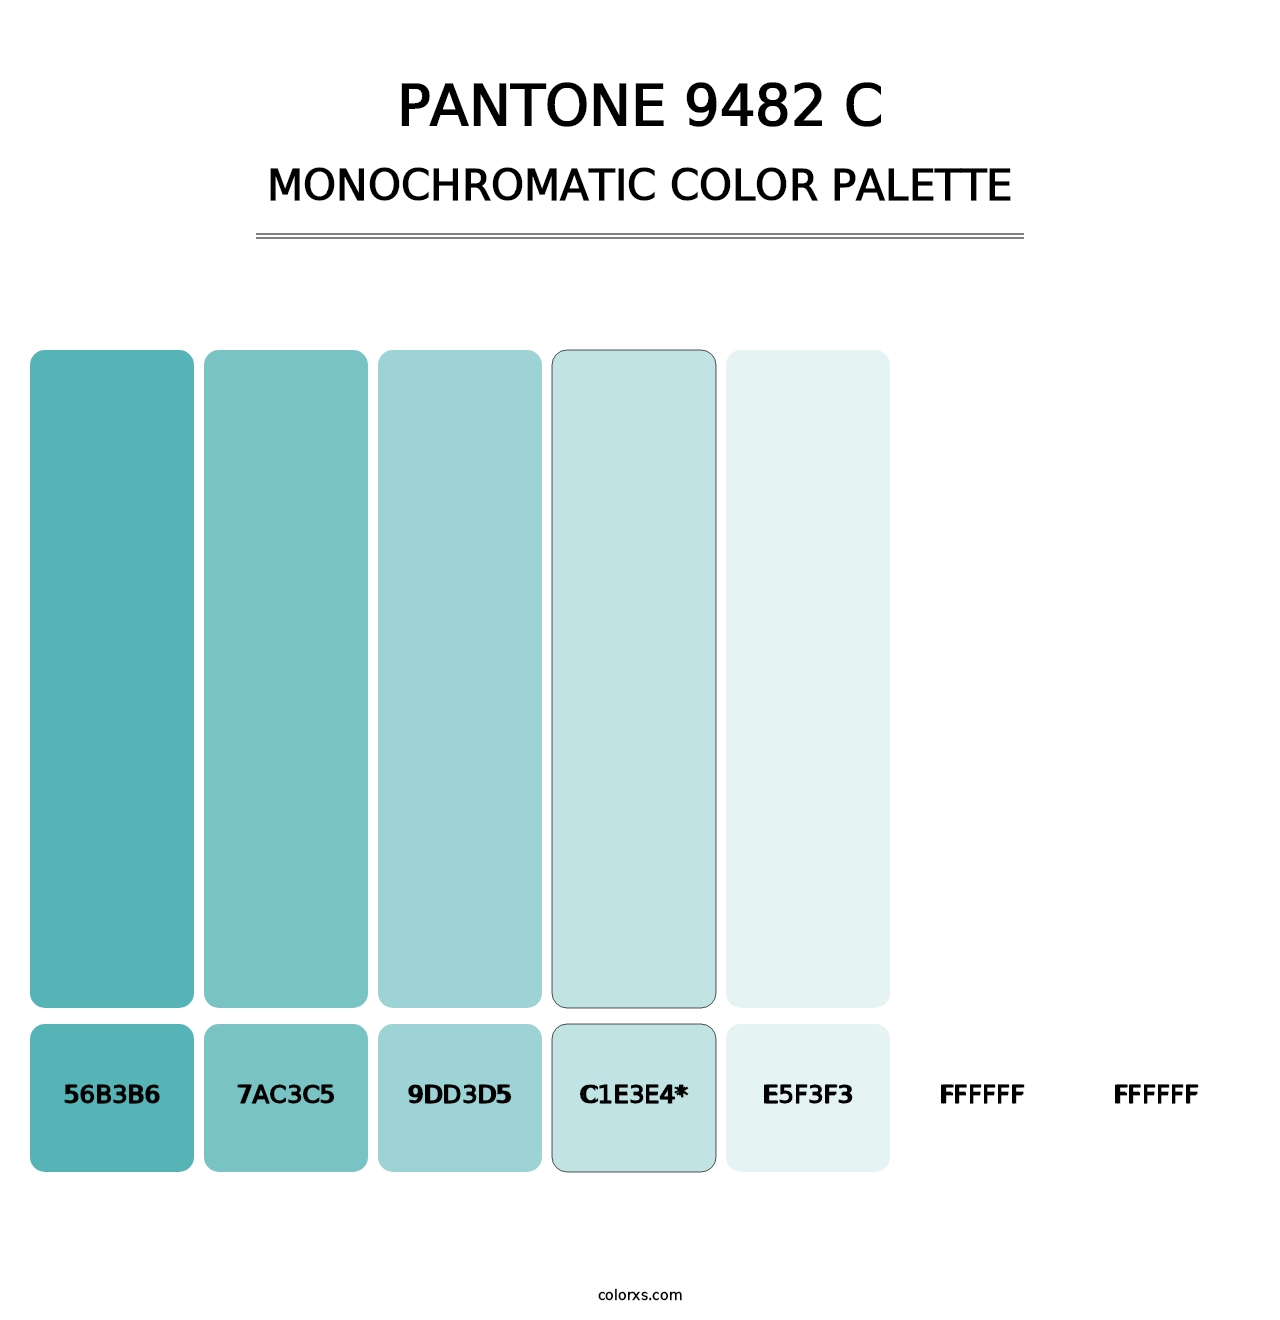 PANTONE 9482 C - Monochromatic Color Palette